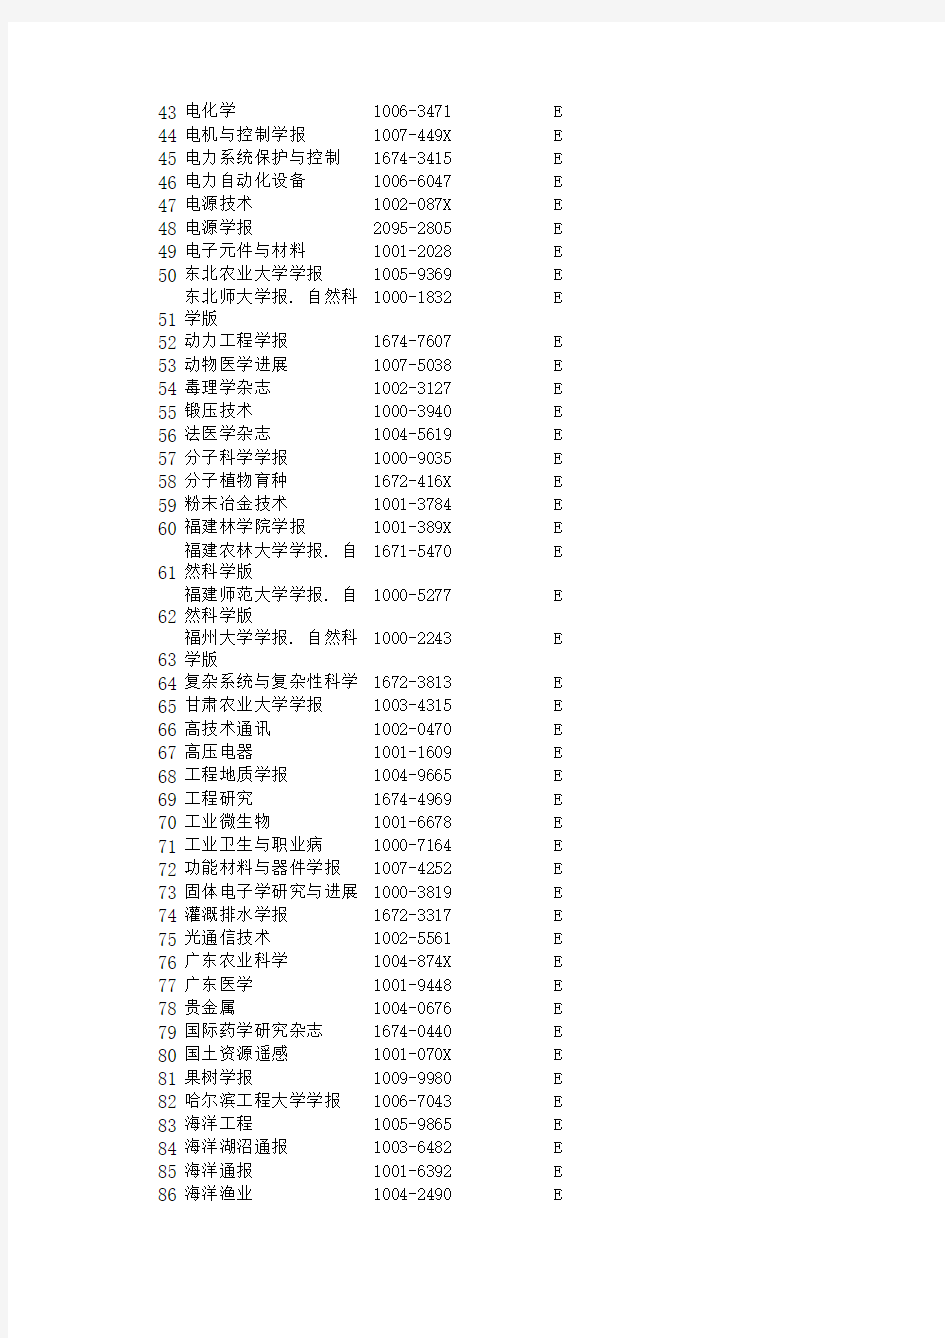 2013-2014年中国科学引文数据库CSCD扩展库(E库)